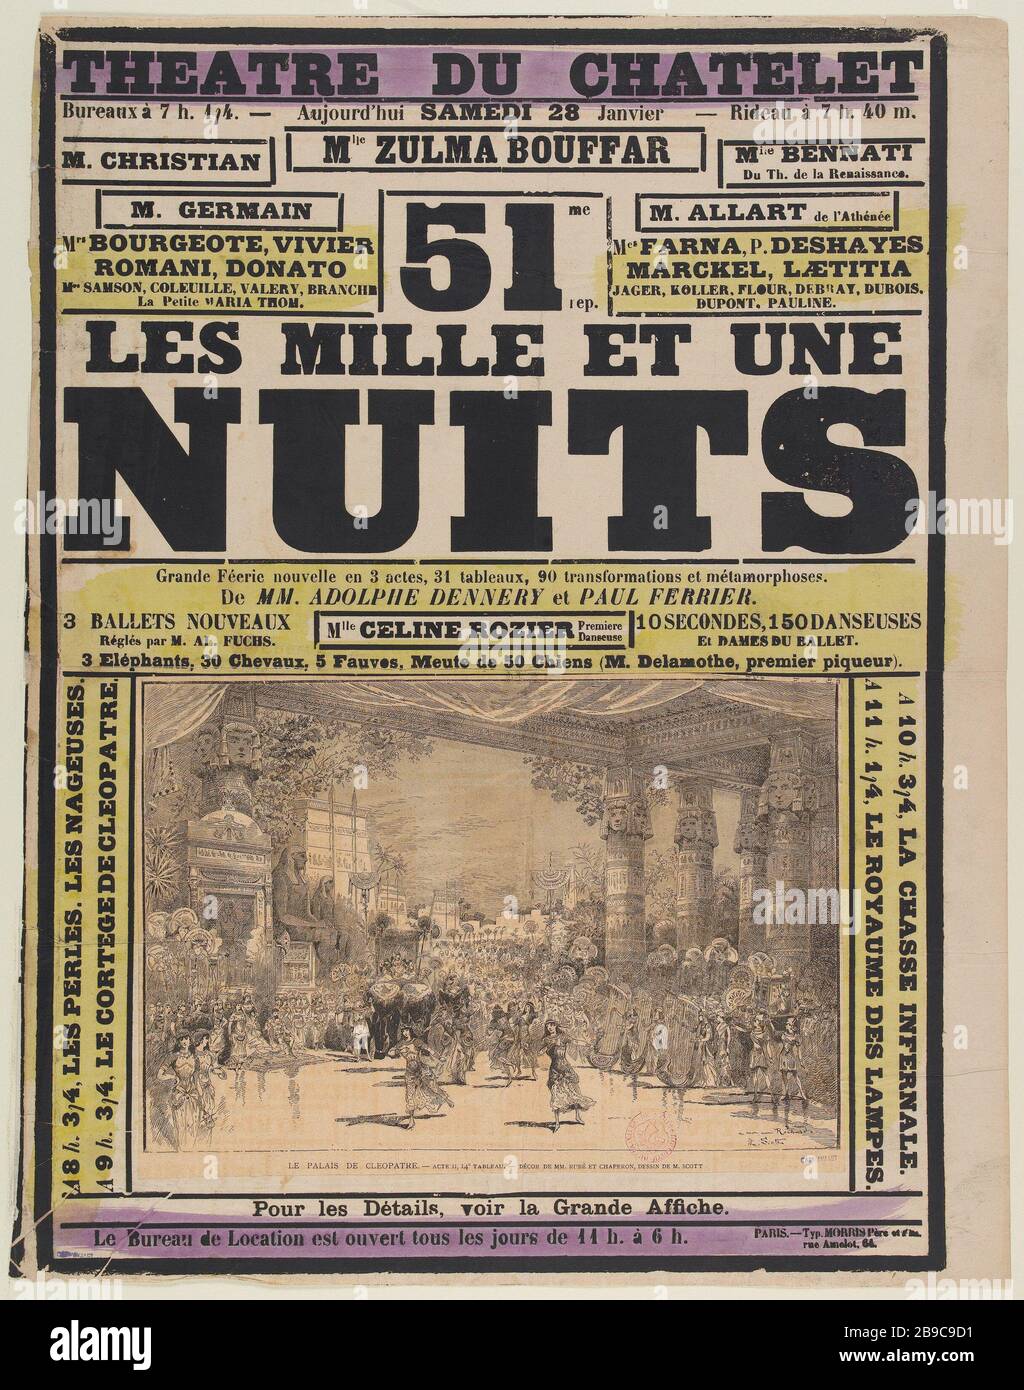 CHATELET THE ARABIAN NIGHTS Scott. "Châtelet, Les mille et une nuits".  Lithographie, 1880-1900. Paris, musée Carnavalet Stock Photo - Alamy